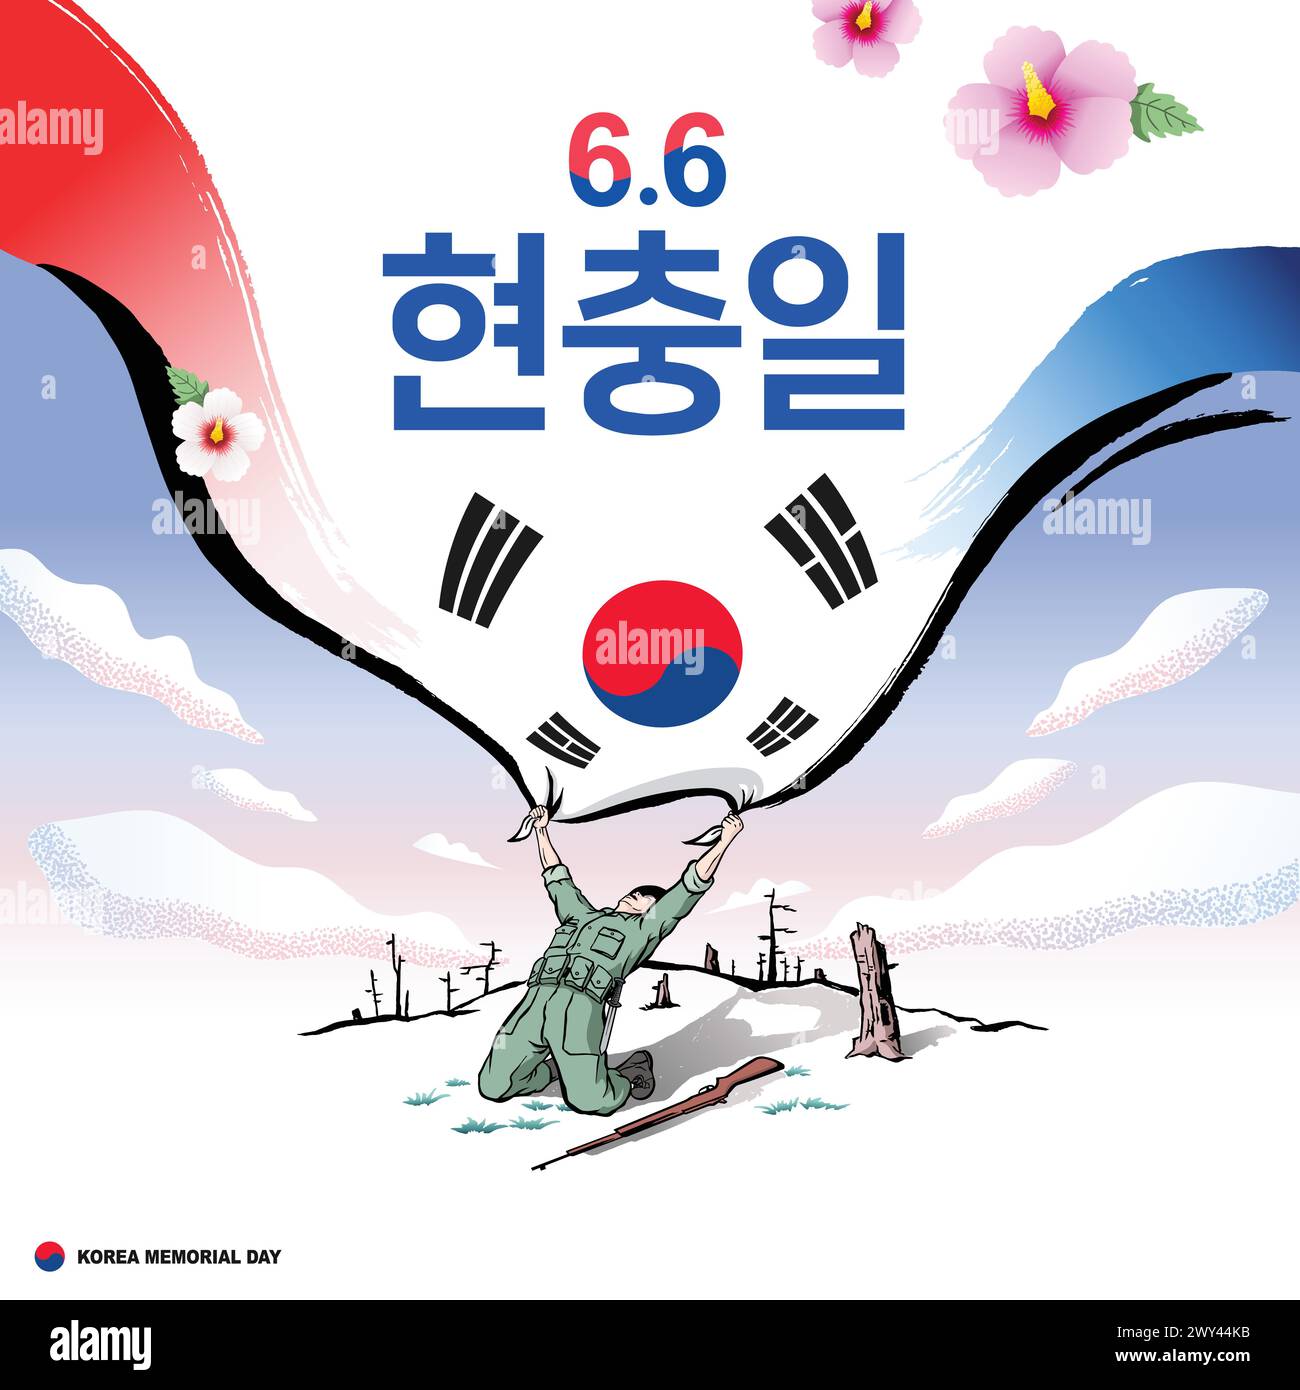 Journée du souvenir coréen. Le concept est un soldat courageux conquérant un sommet de montagne et agitant un grand drapeau coréen dans la joie. Illustration de Vecteur